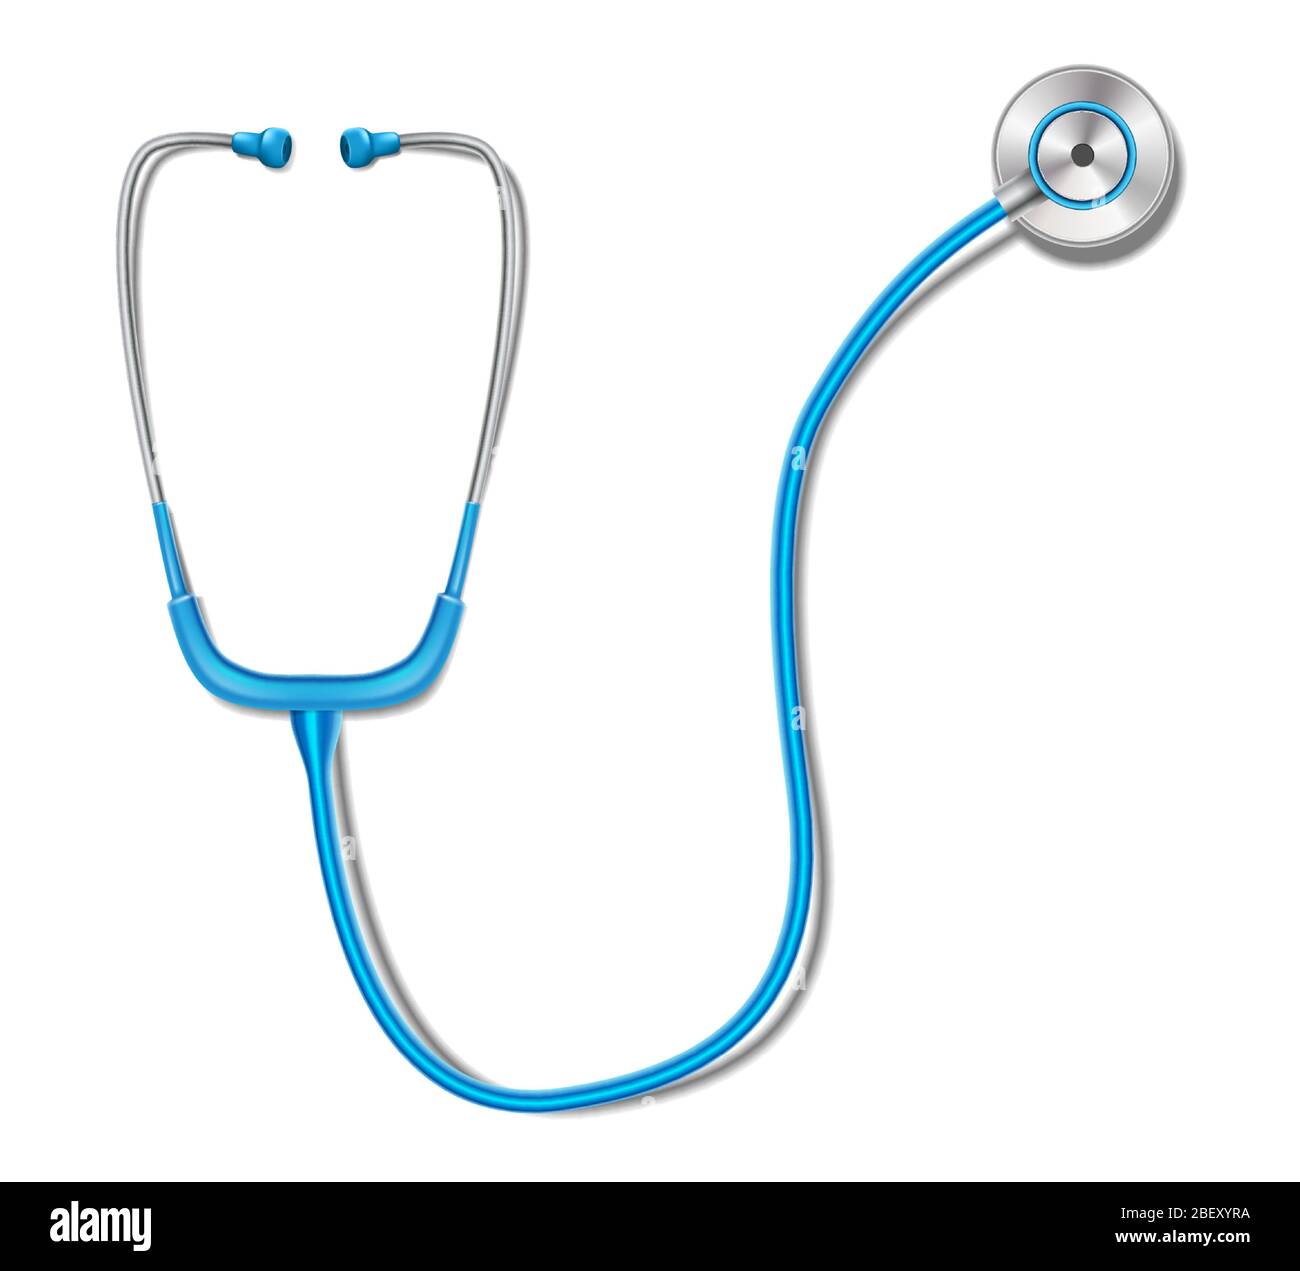 Gesundheitskonzept mit blauem Stethoskop Mockup isoliert. Realistische Stethoskop Medizin Ausrüstung für die Gesundheitsdiagnose. Vektorgrafik Stock Vektor